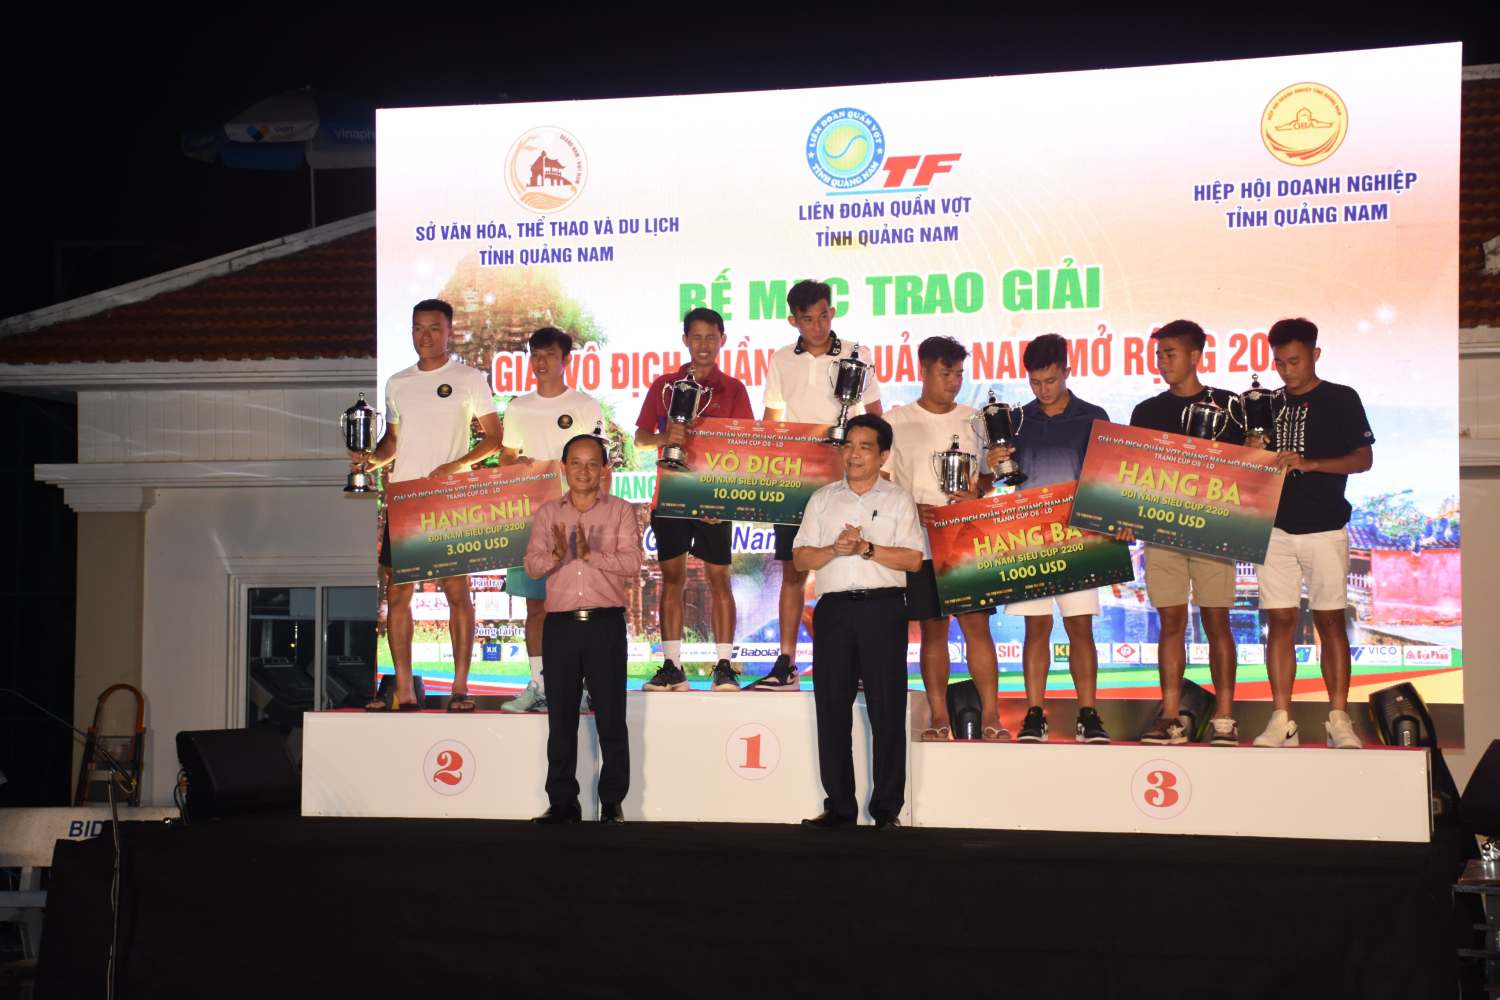 Đôi nam Nguyễn Văn Phương - Mai Thanh Trinh đã đoạt chức vô địch nội dung siêu cúp 2200 với giải thưởng 10.000 USD